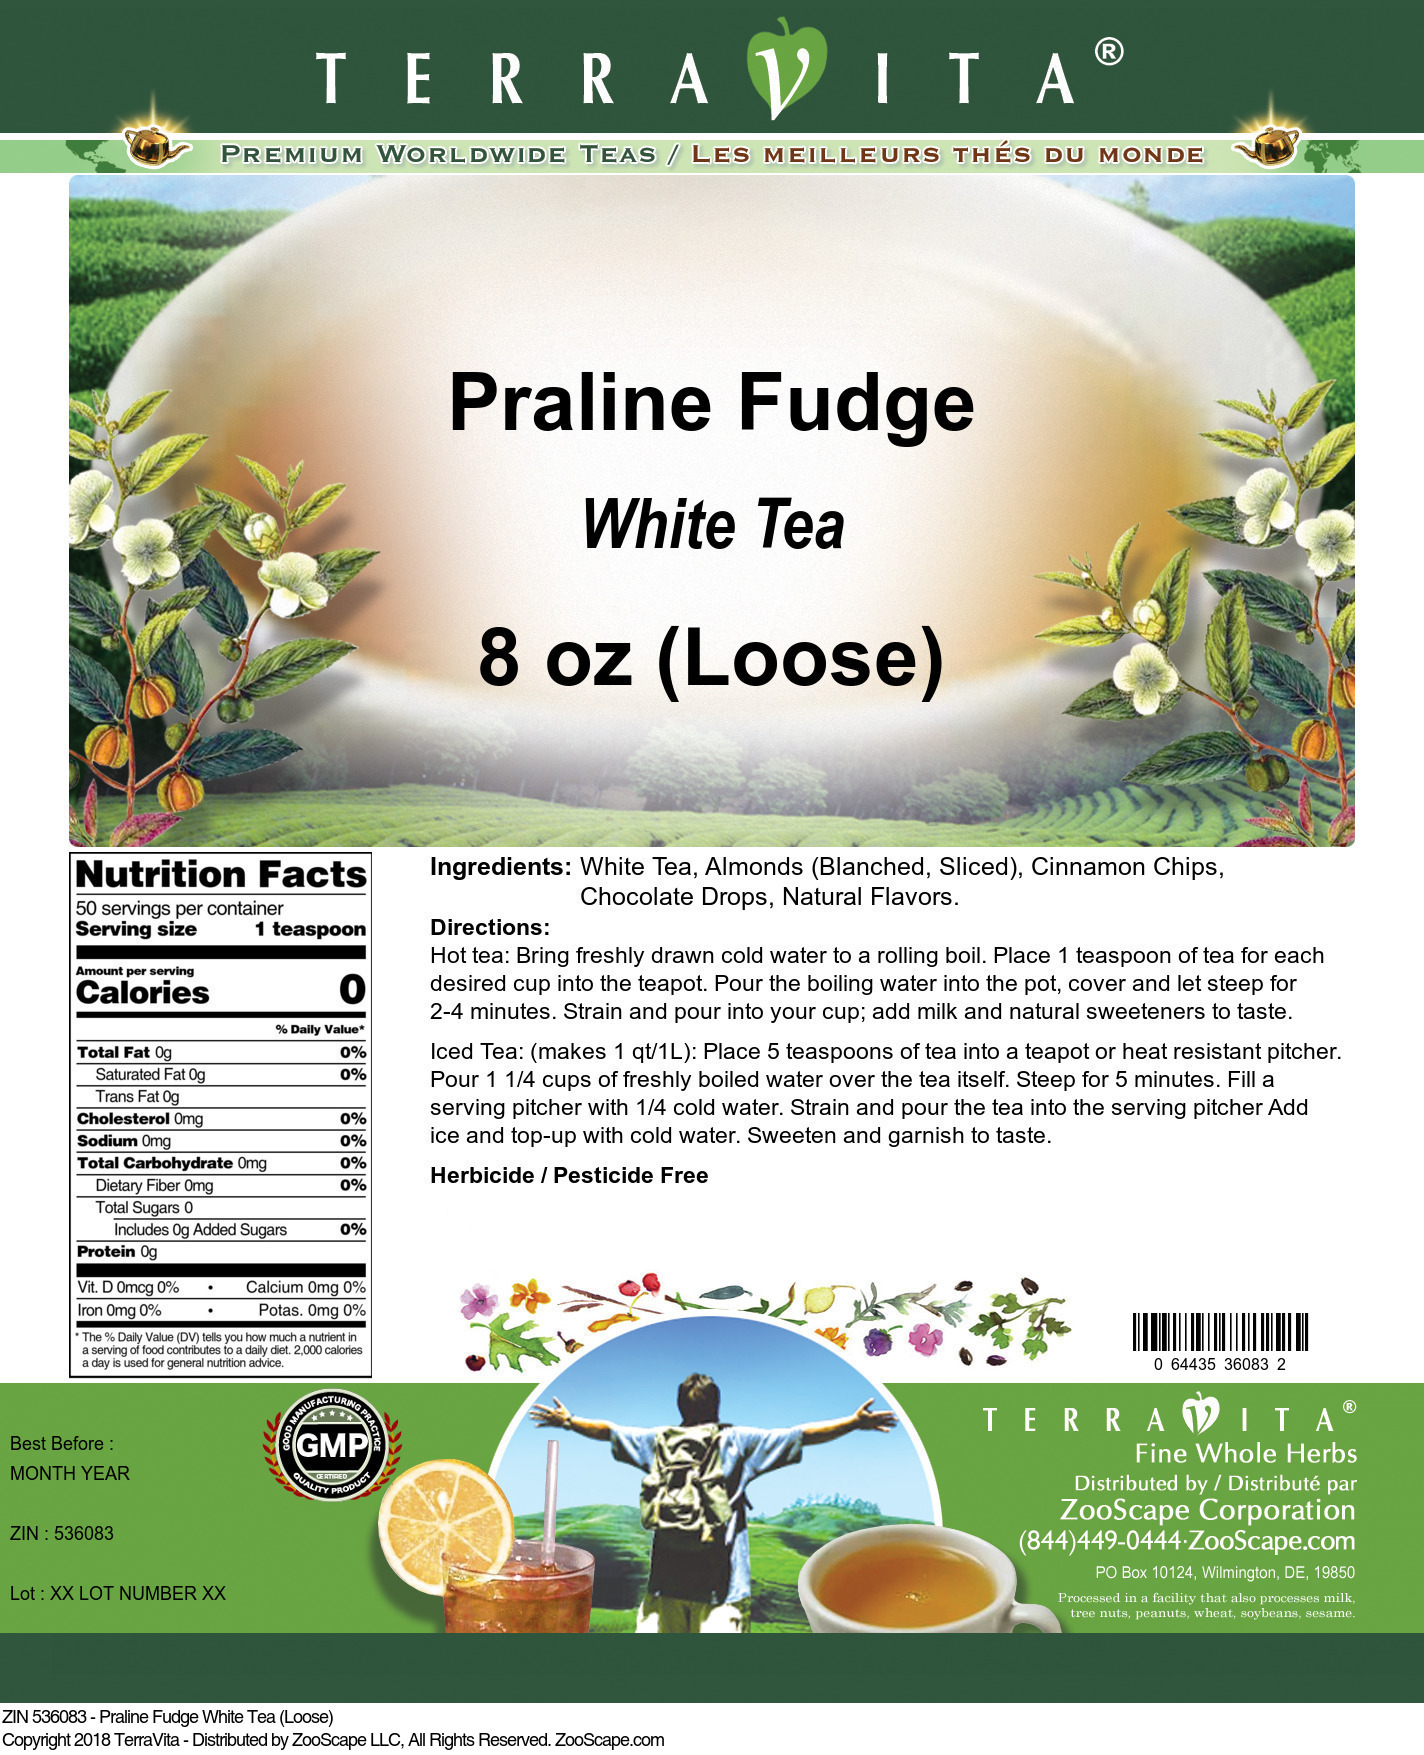 Praline Fudge White Tea (Loose) - Label